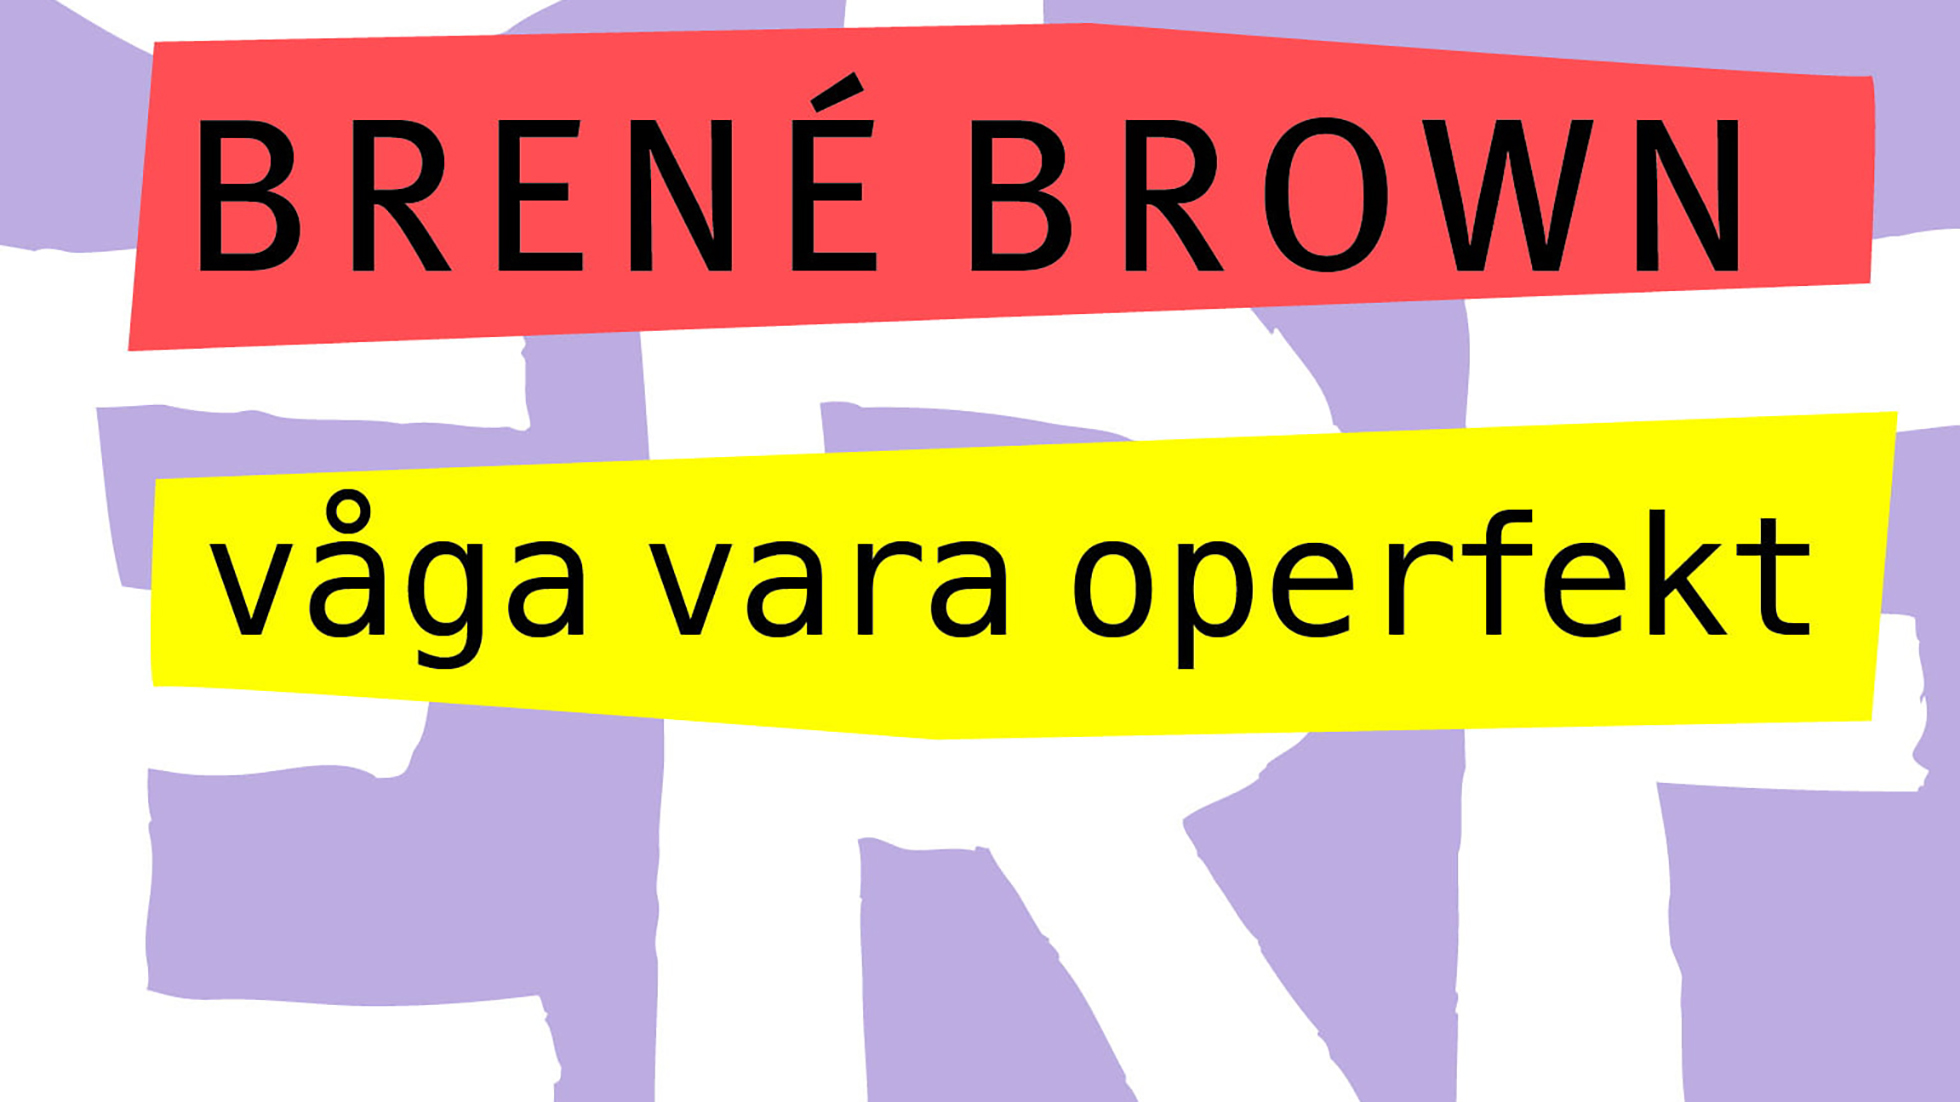 Vaga-vara-operfekt-Brene-Brown